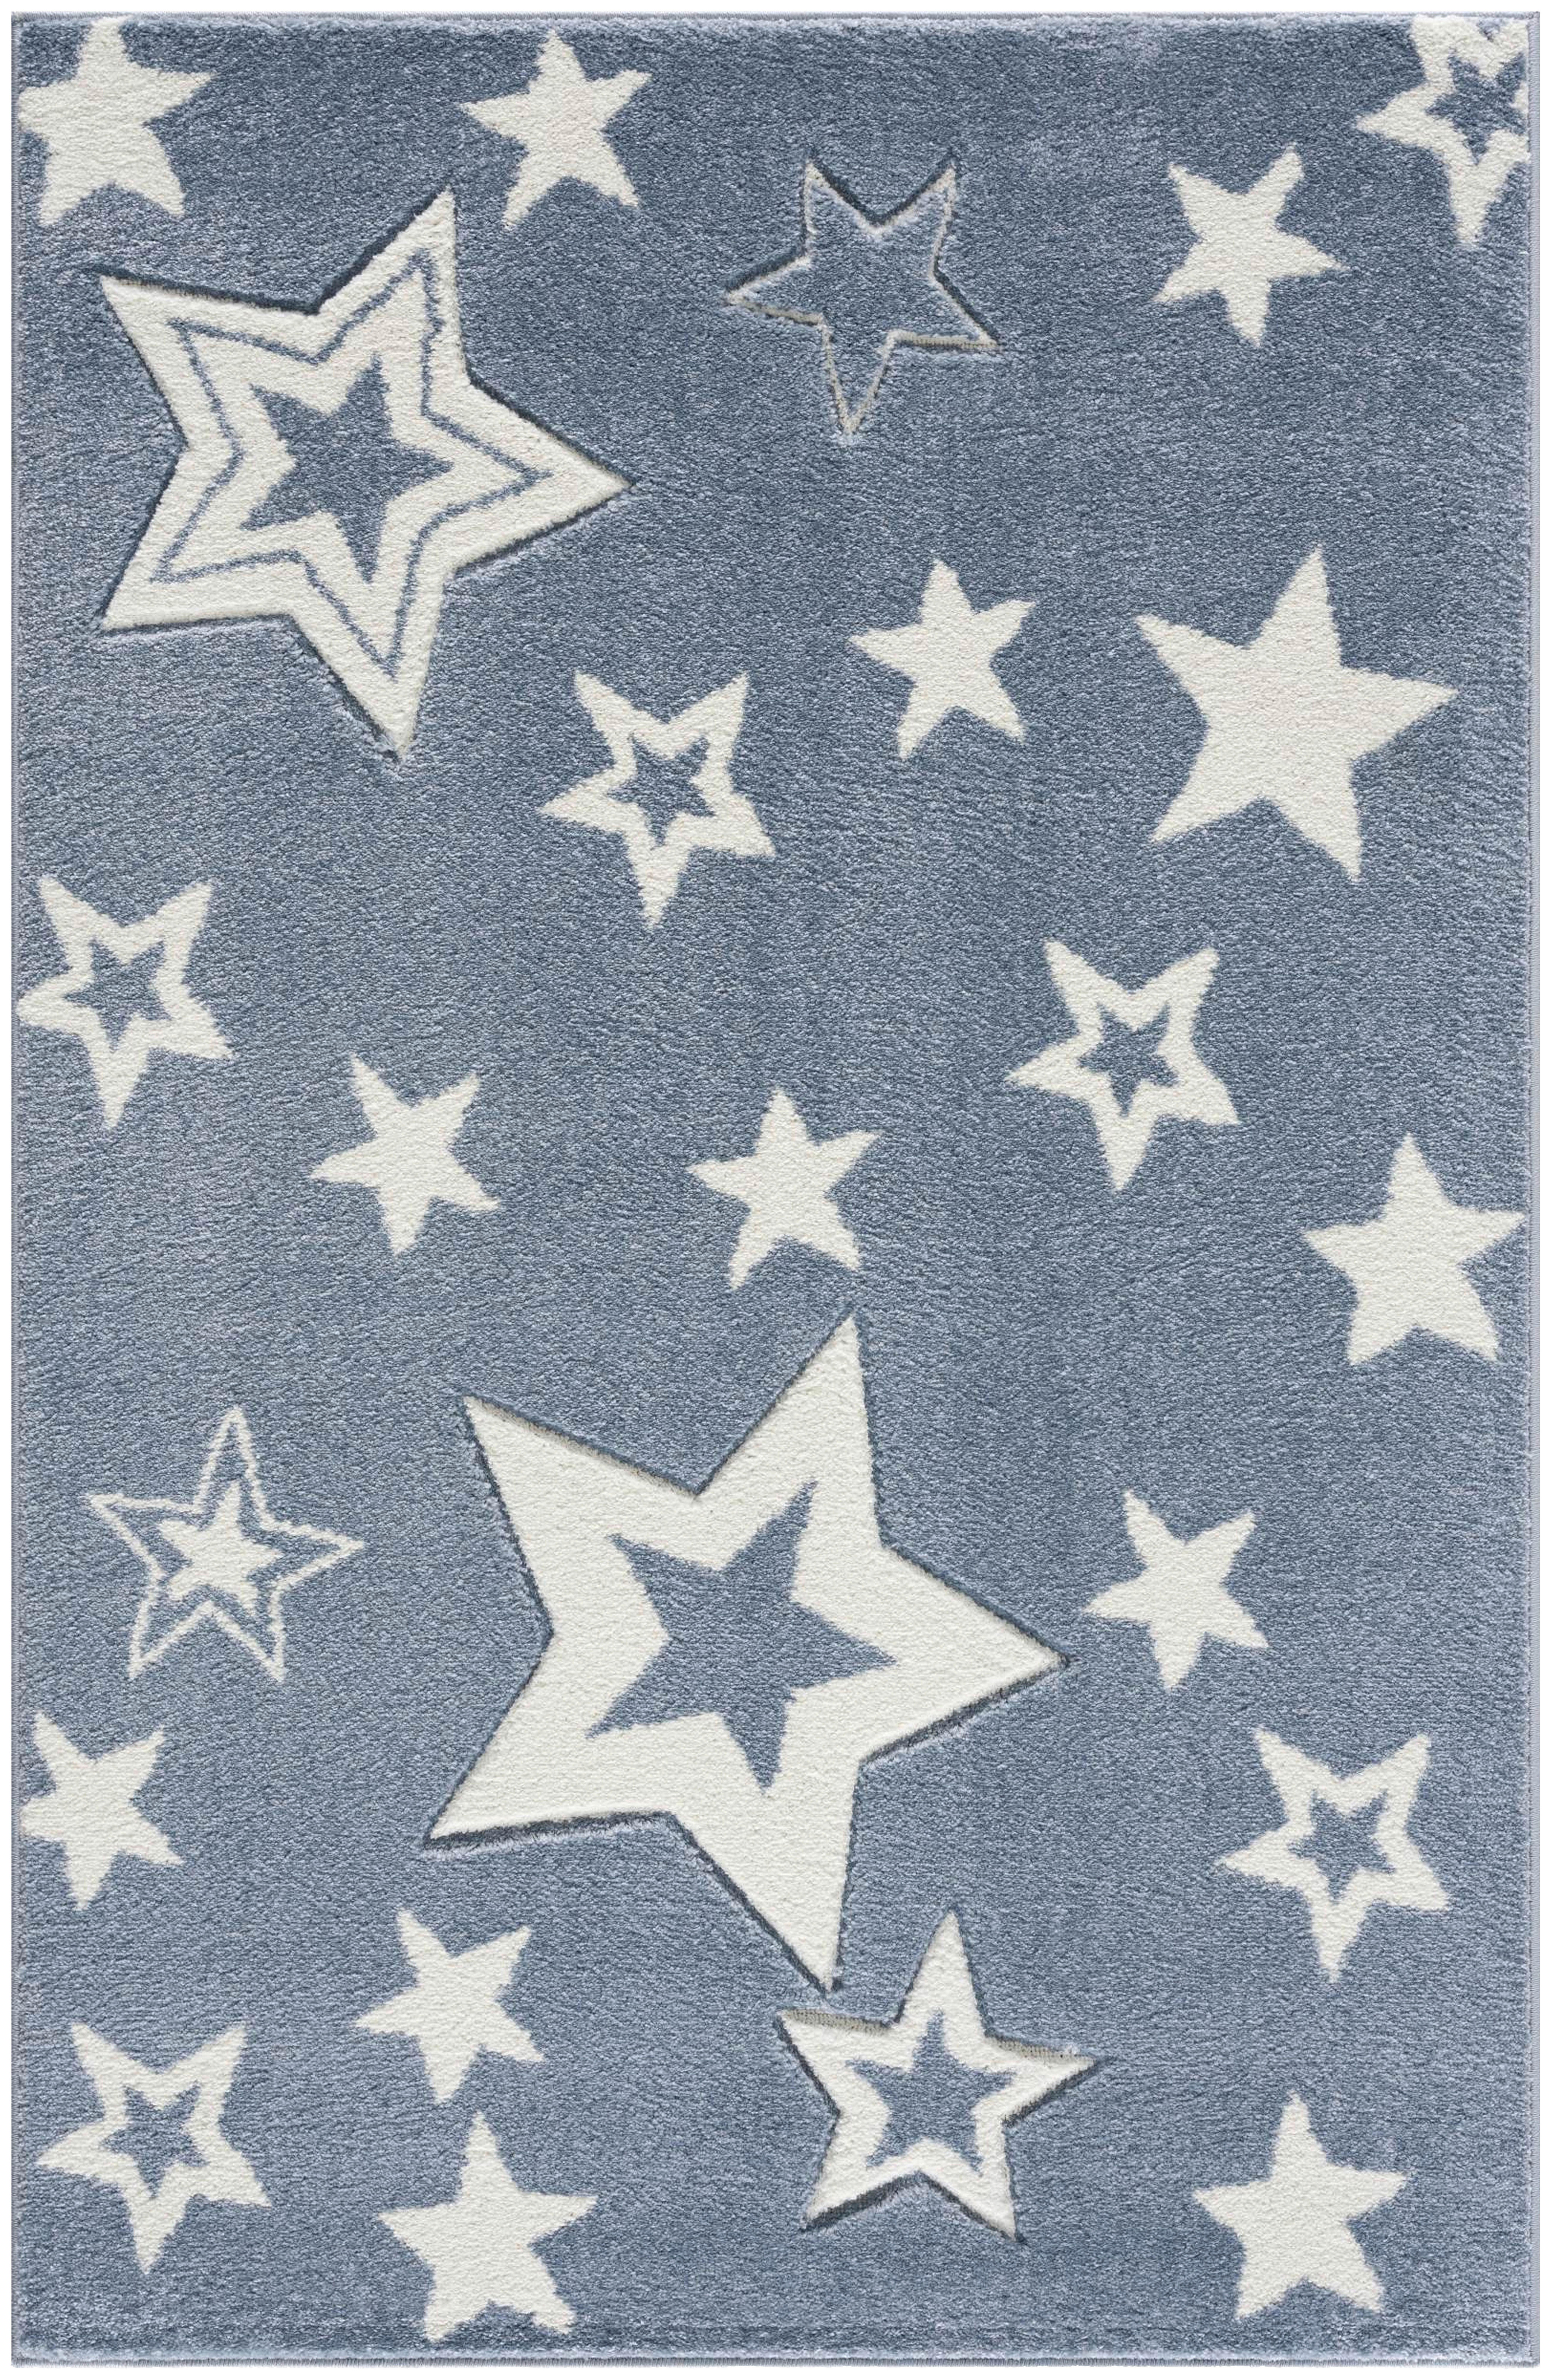 KINDERTEPPICH Happy Rugs  - Blau/Weiß, Trend, Textil (120/180cm)